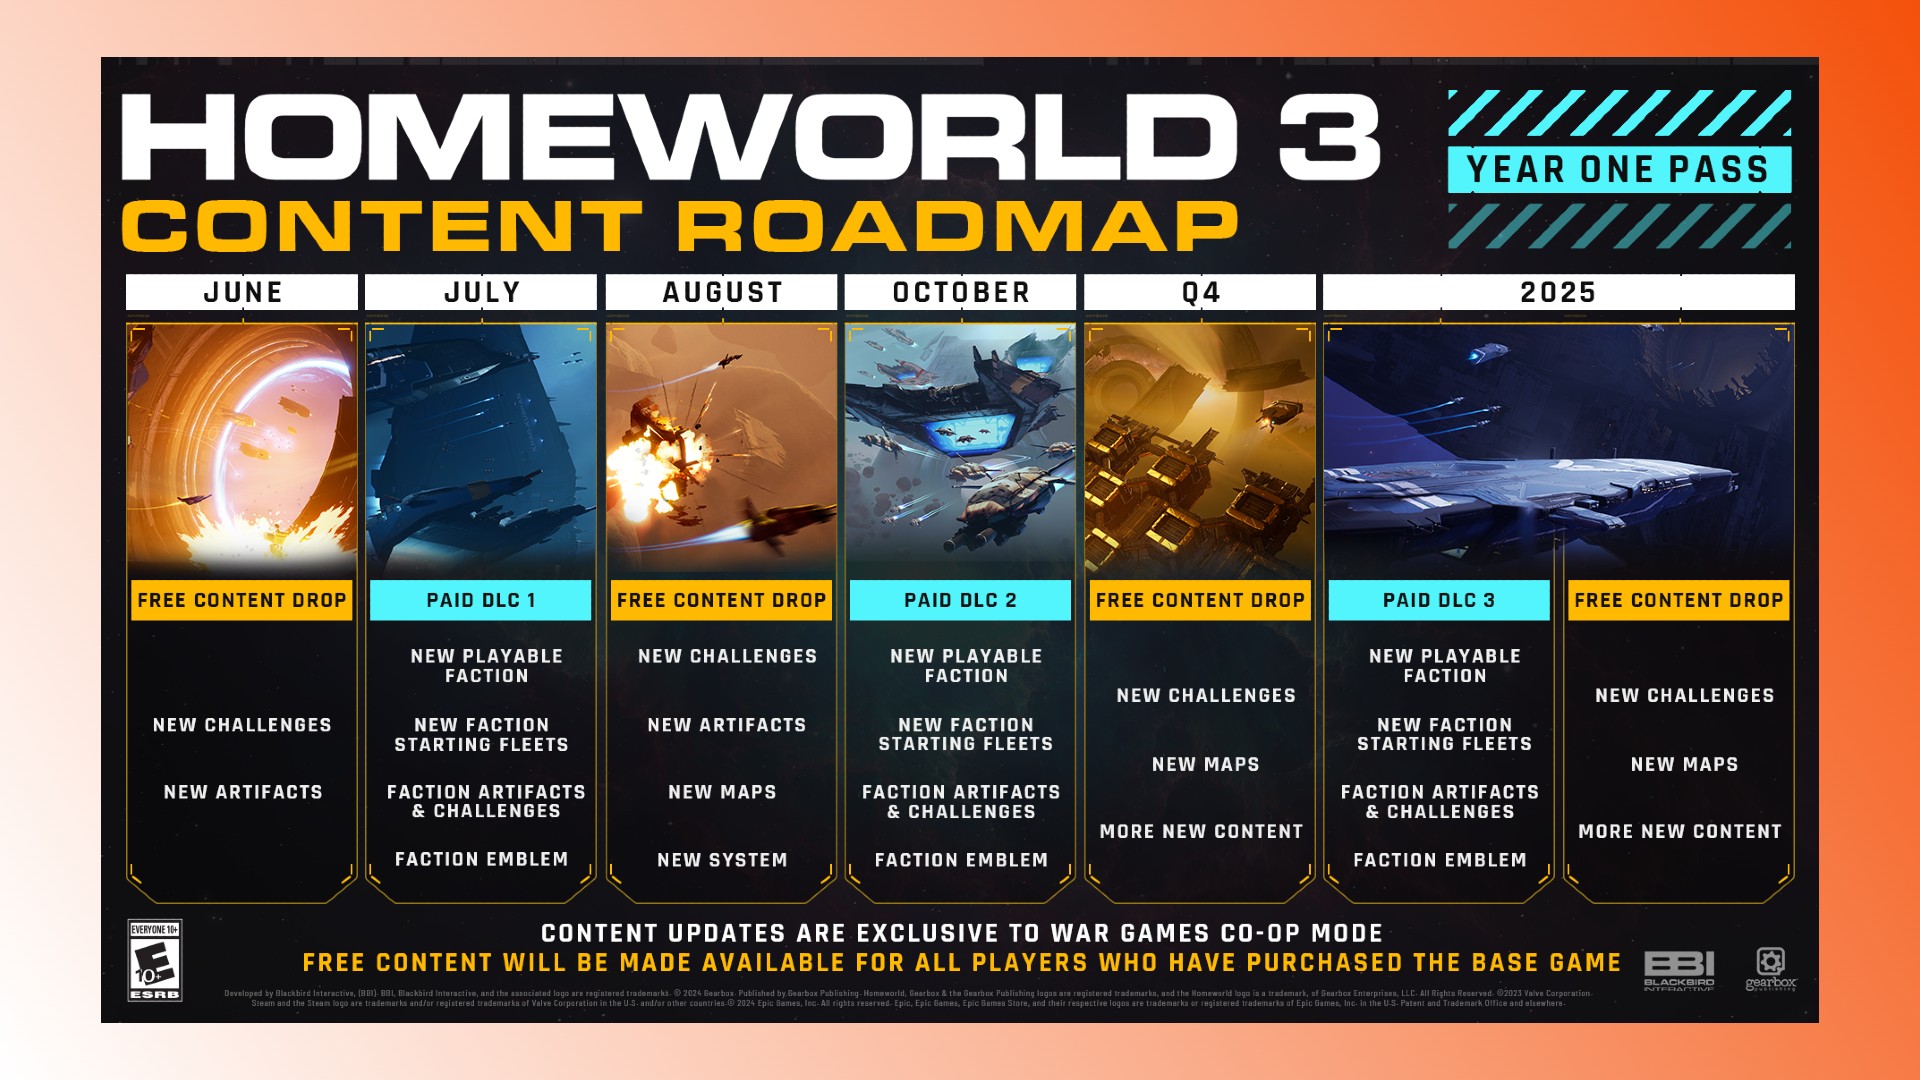 Homeworld 3 Steam RTS-Spiel: Die Homeworld 3 DLC-Roadmap